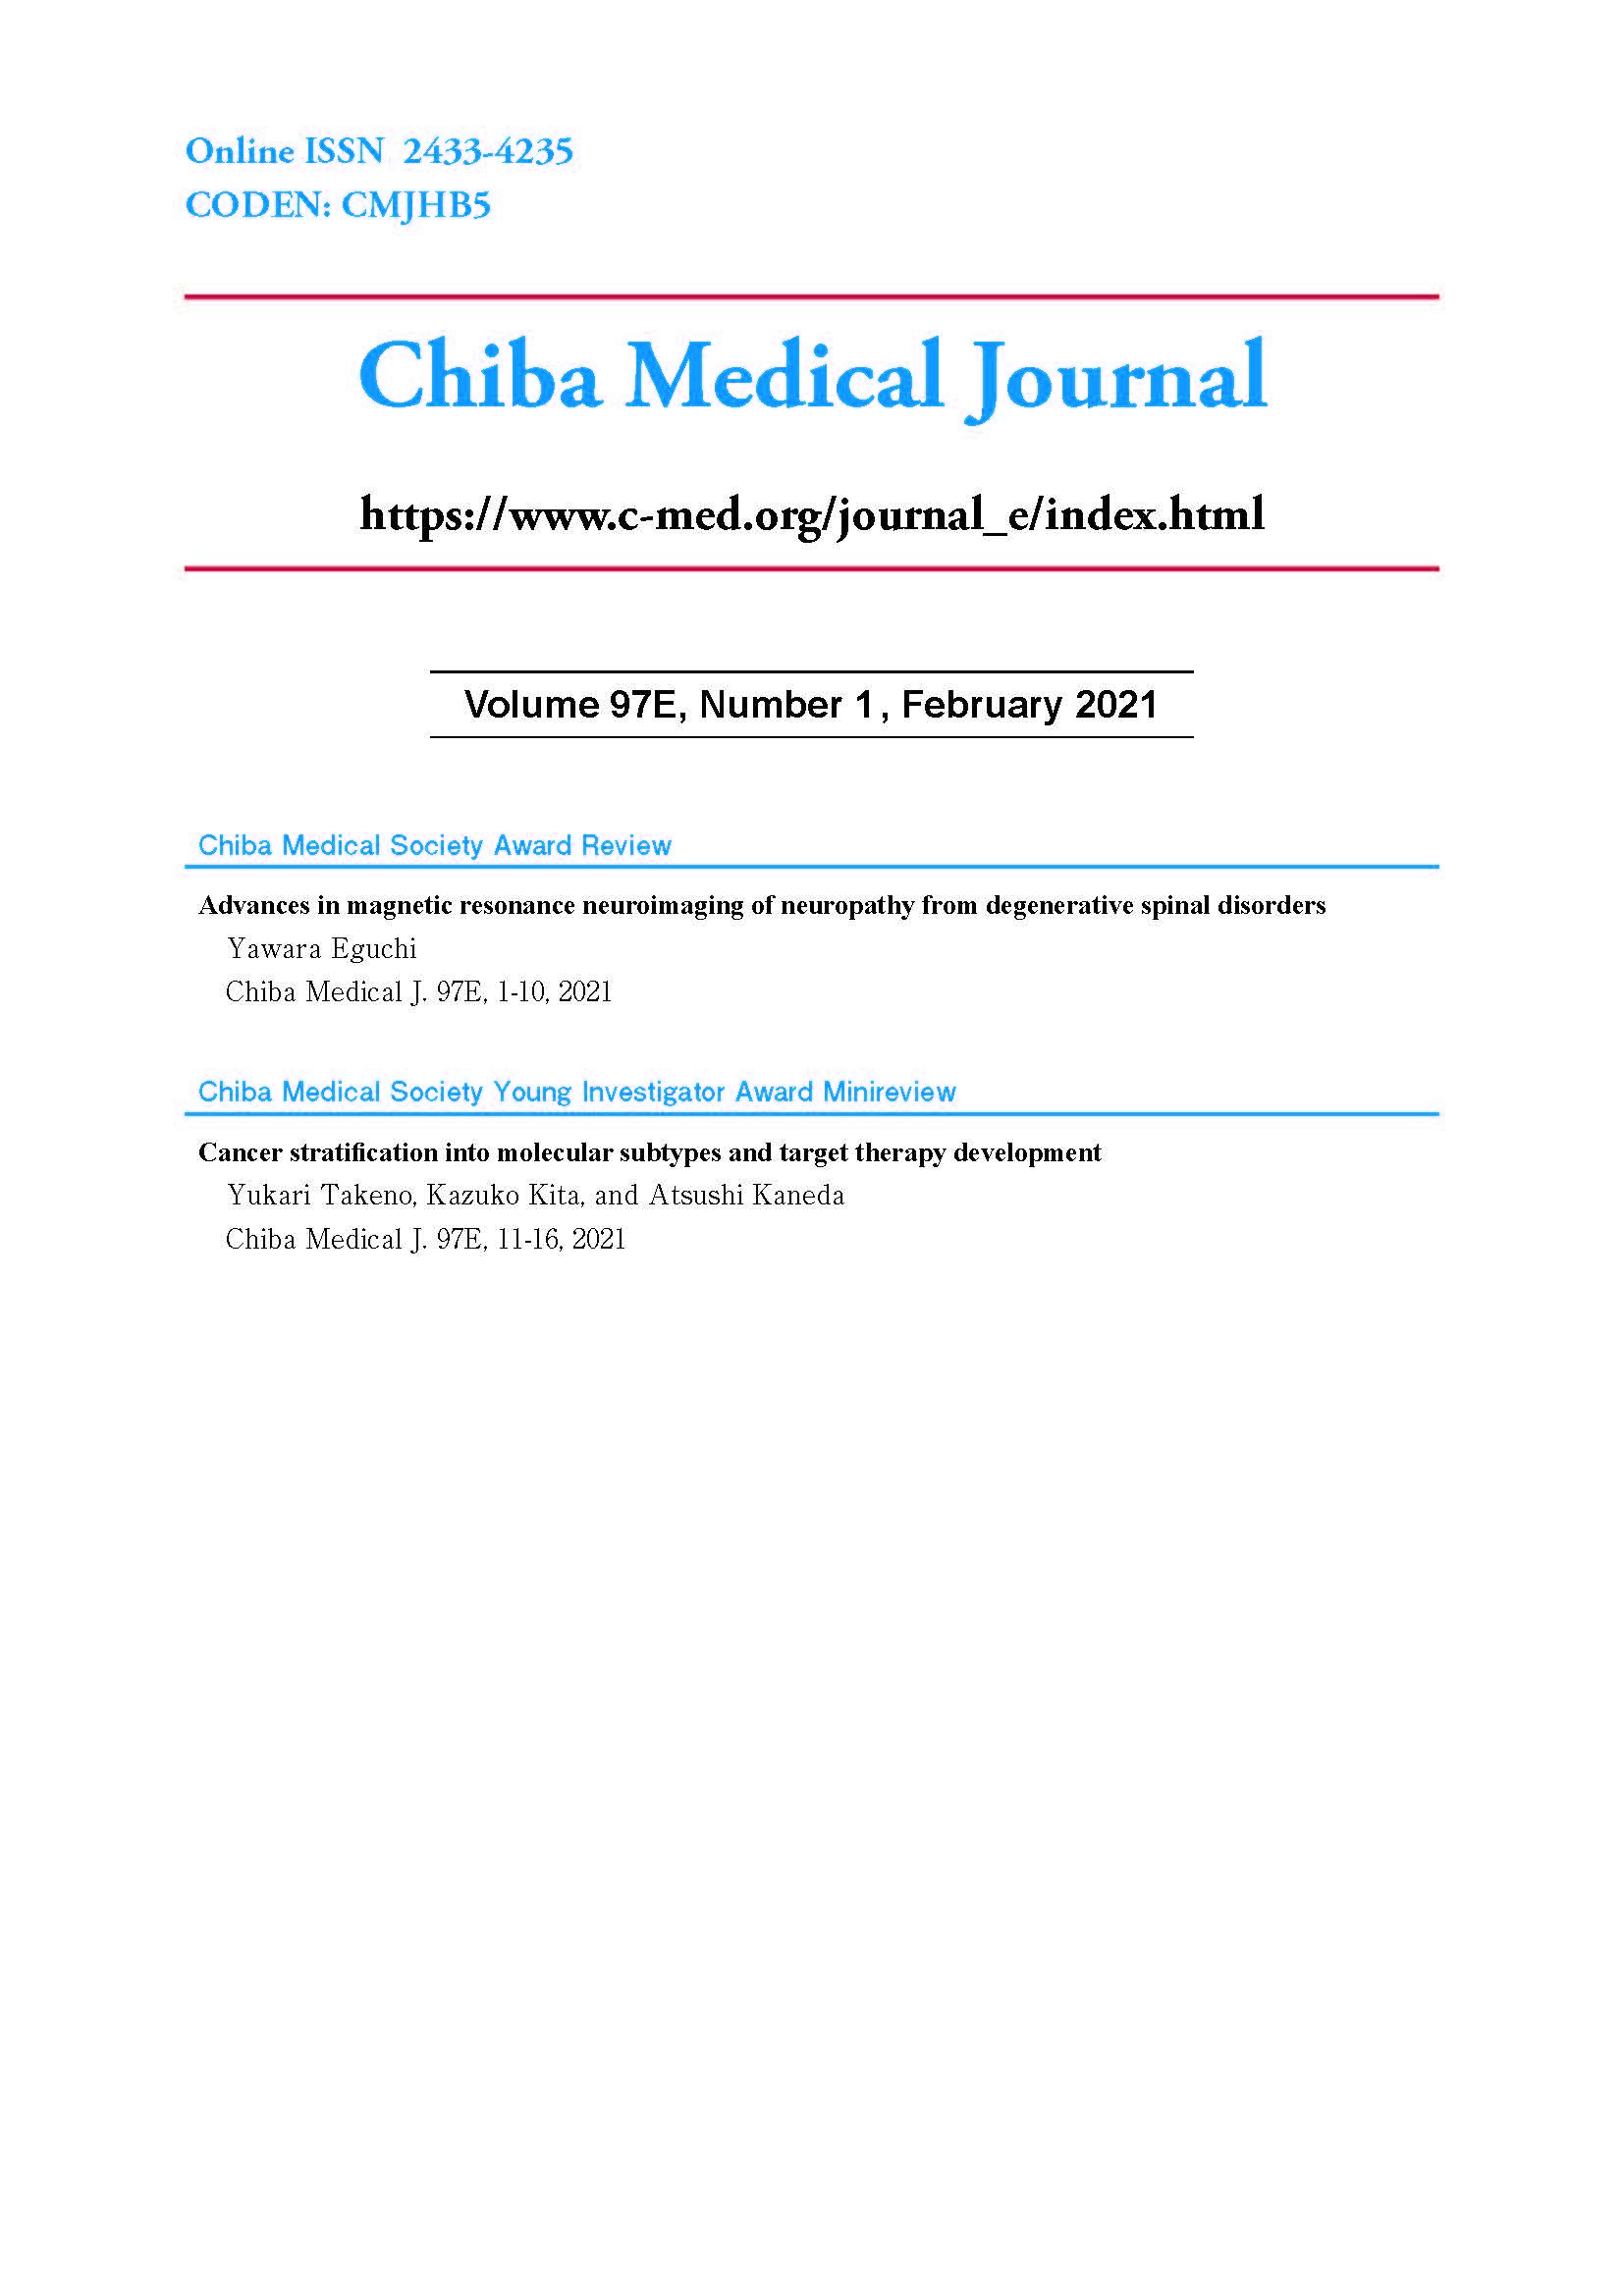 Chiba Medical Journal ; Vol. 97E No. 1